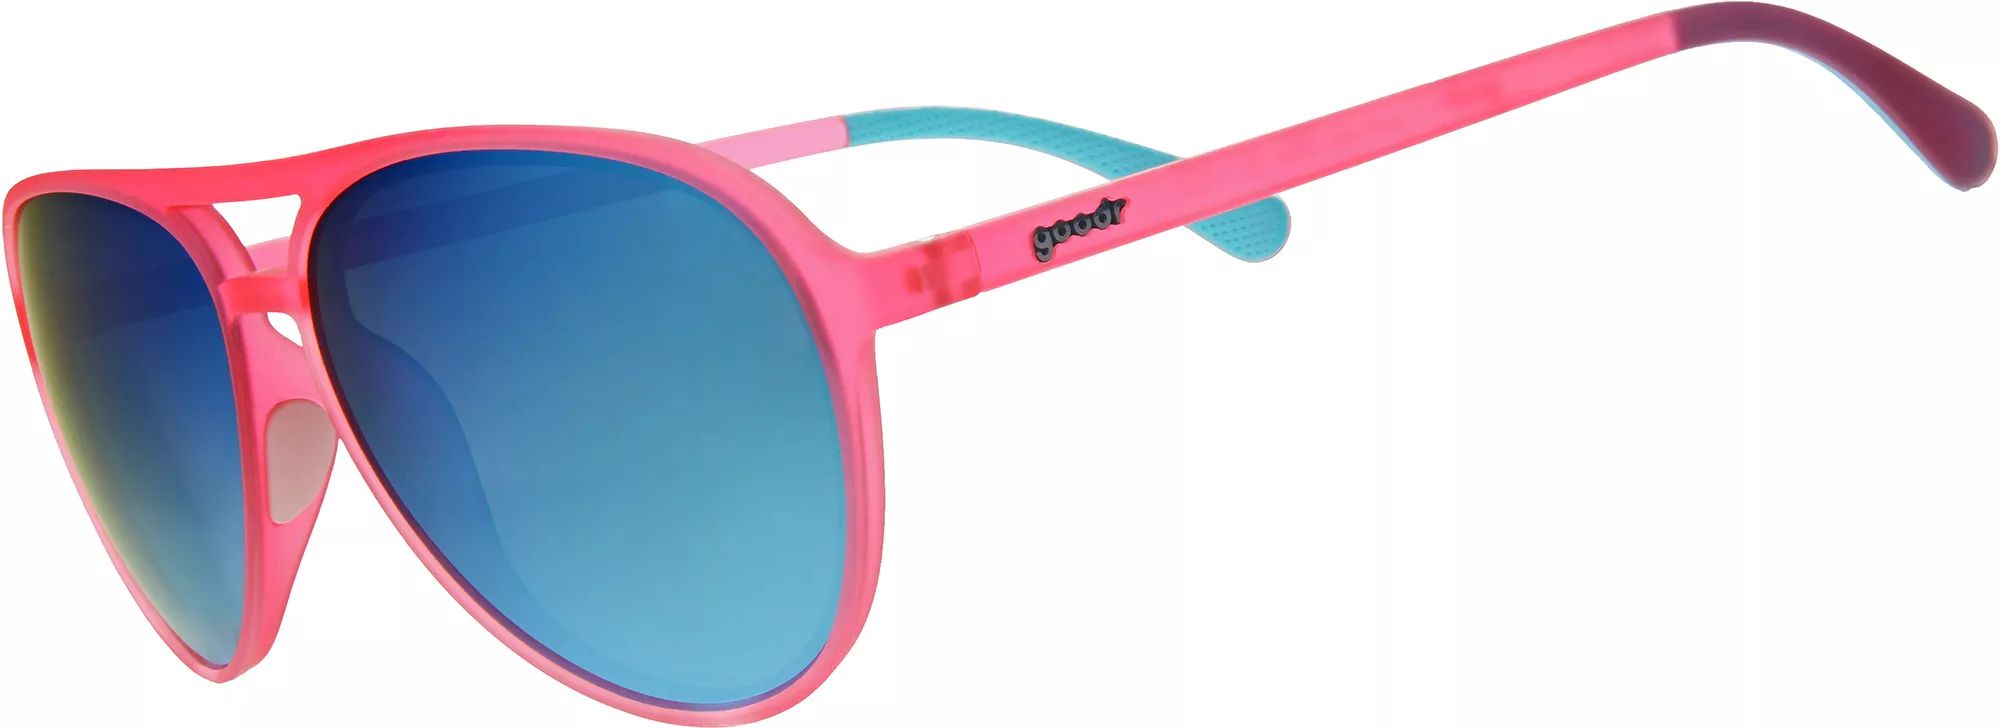 Goodr Carl Is My Co-Pilot Polarized Sunglasses, Men's, Pink | Public Lands